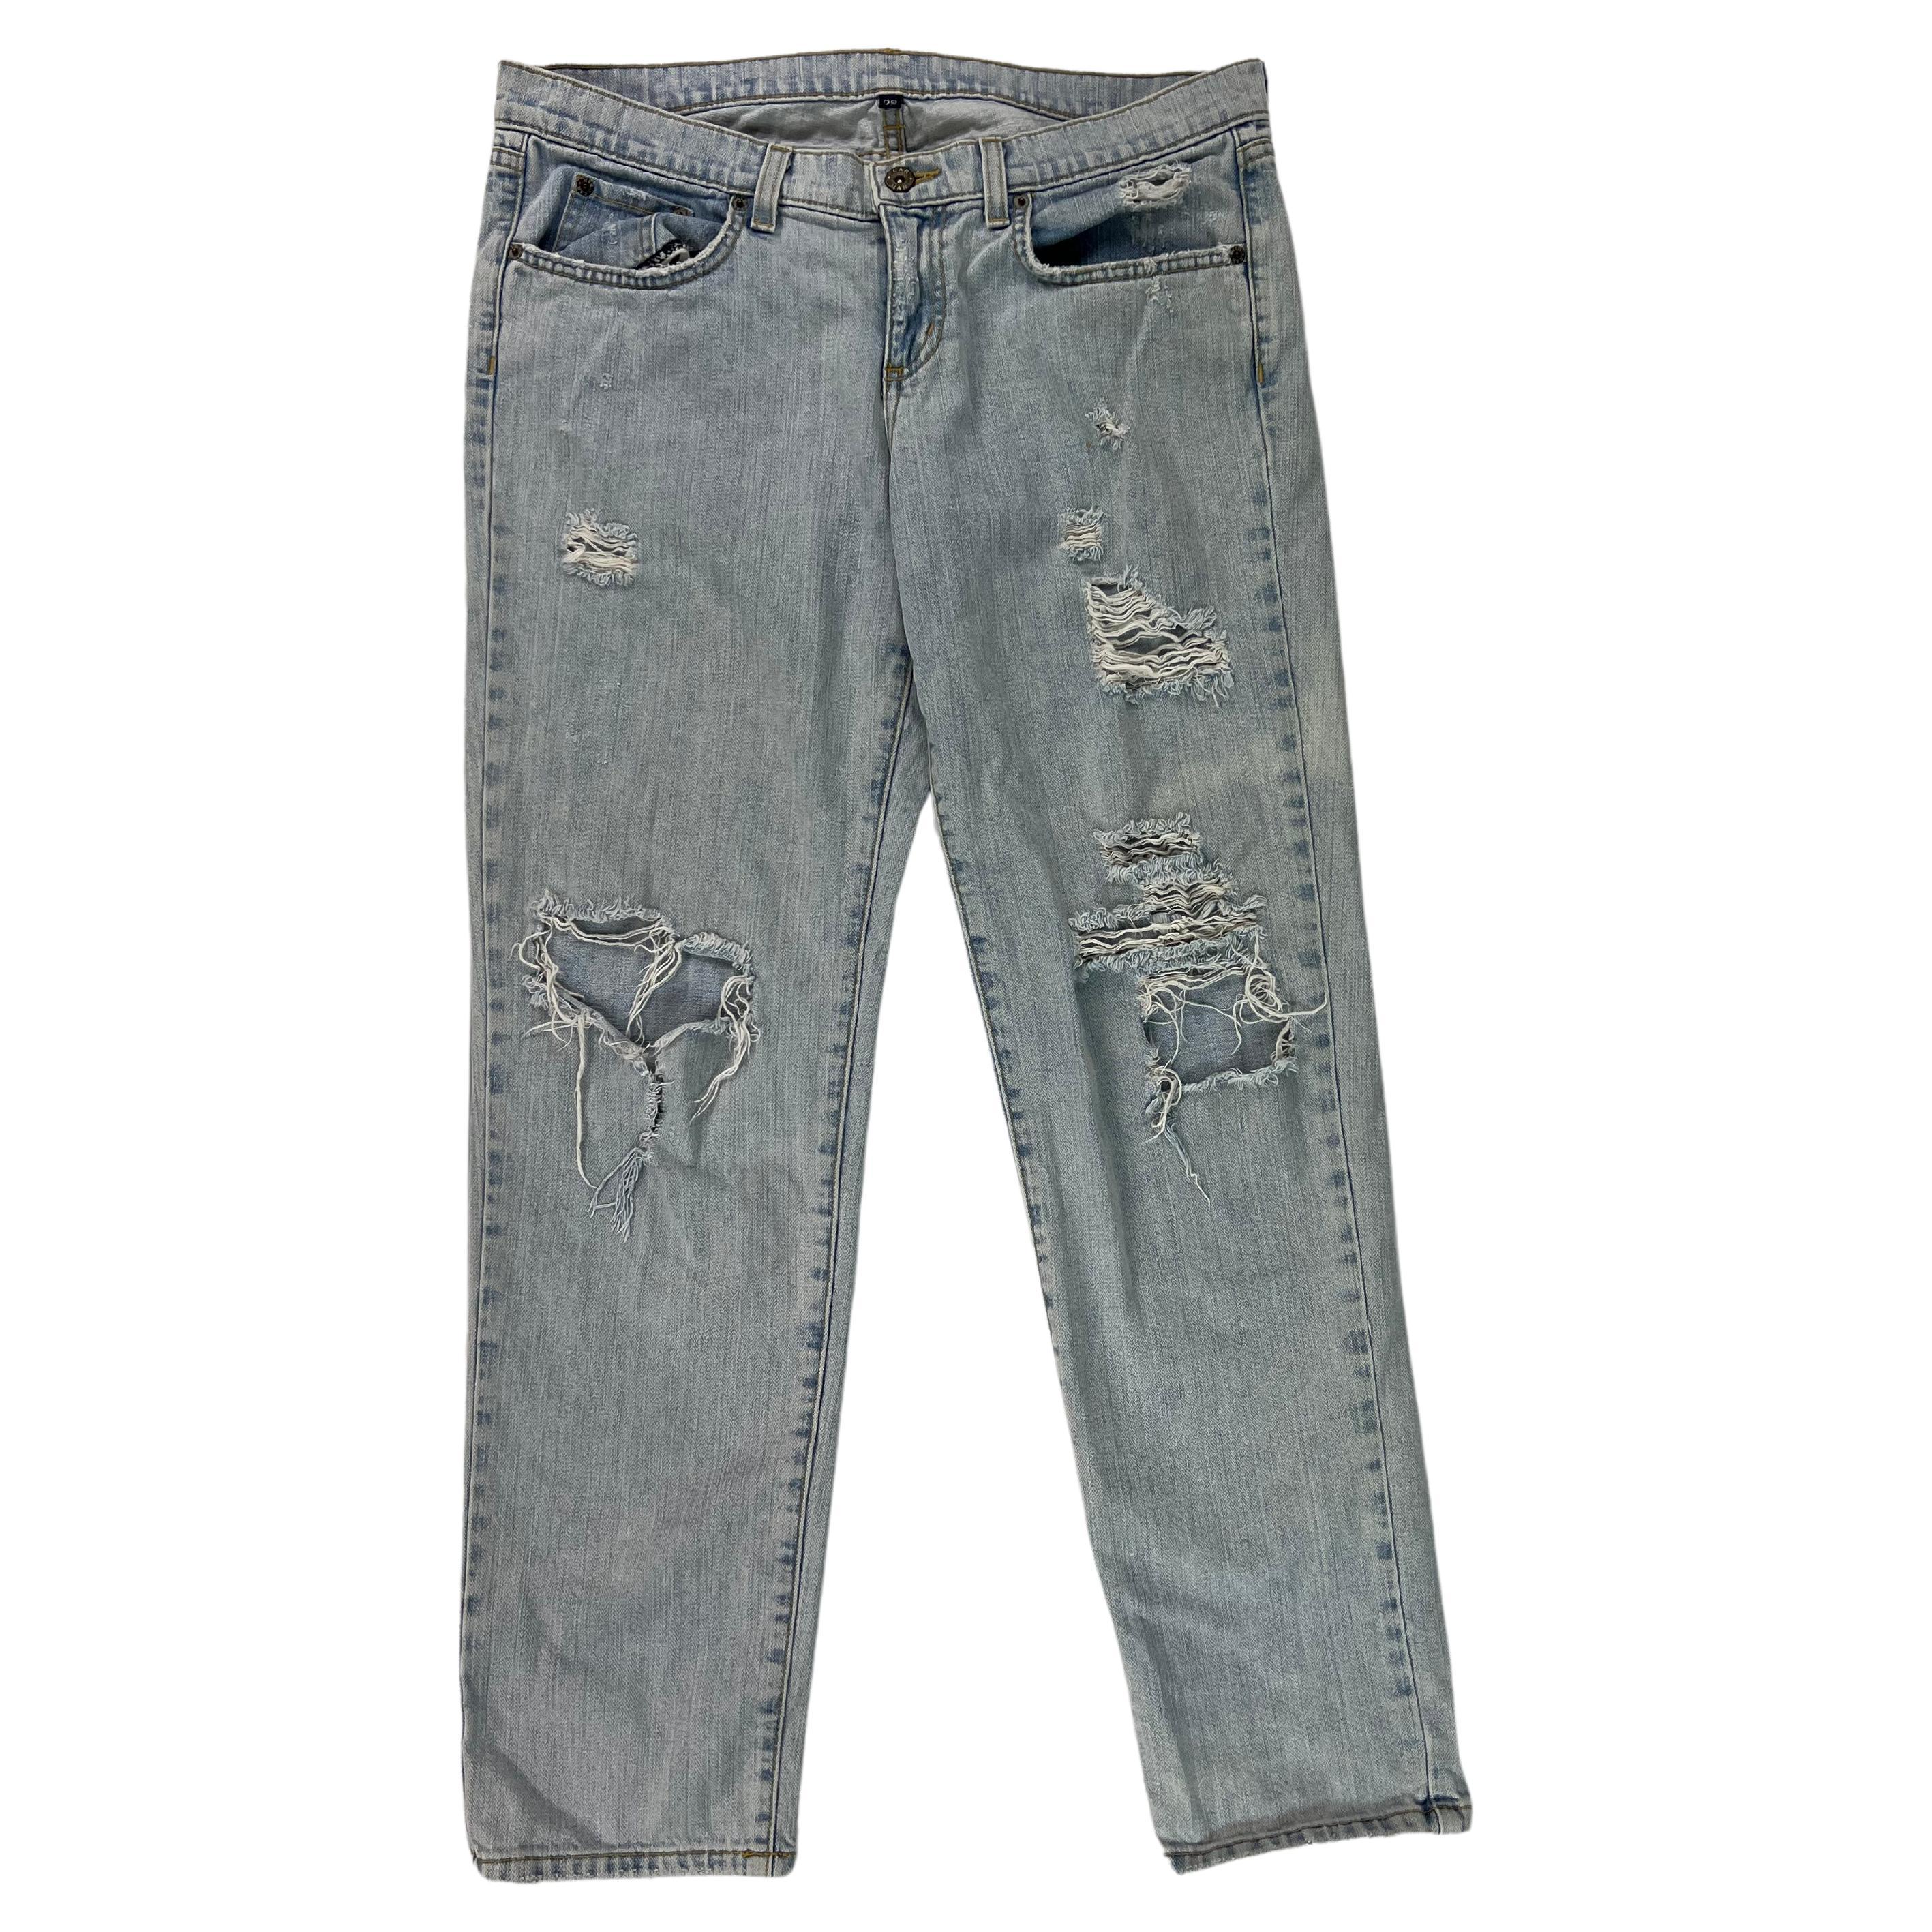 Carmar - Pantalon en jean denim, taille 29